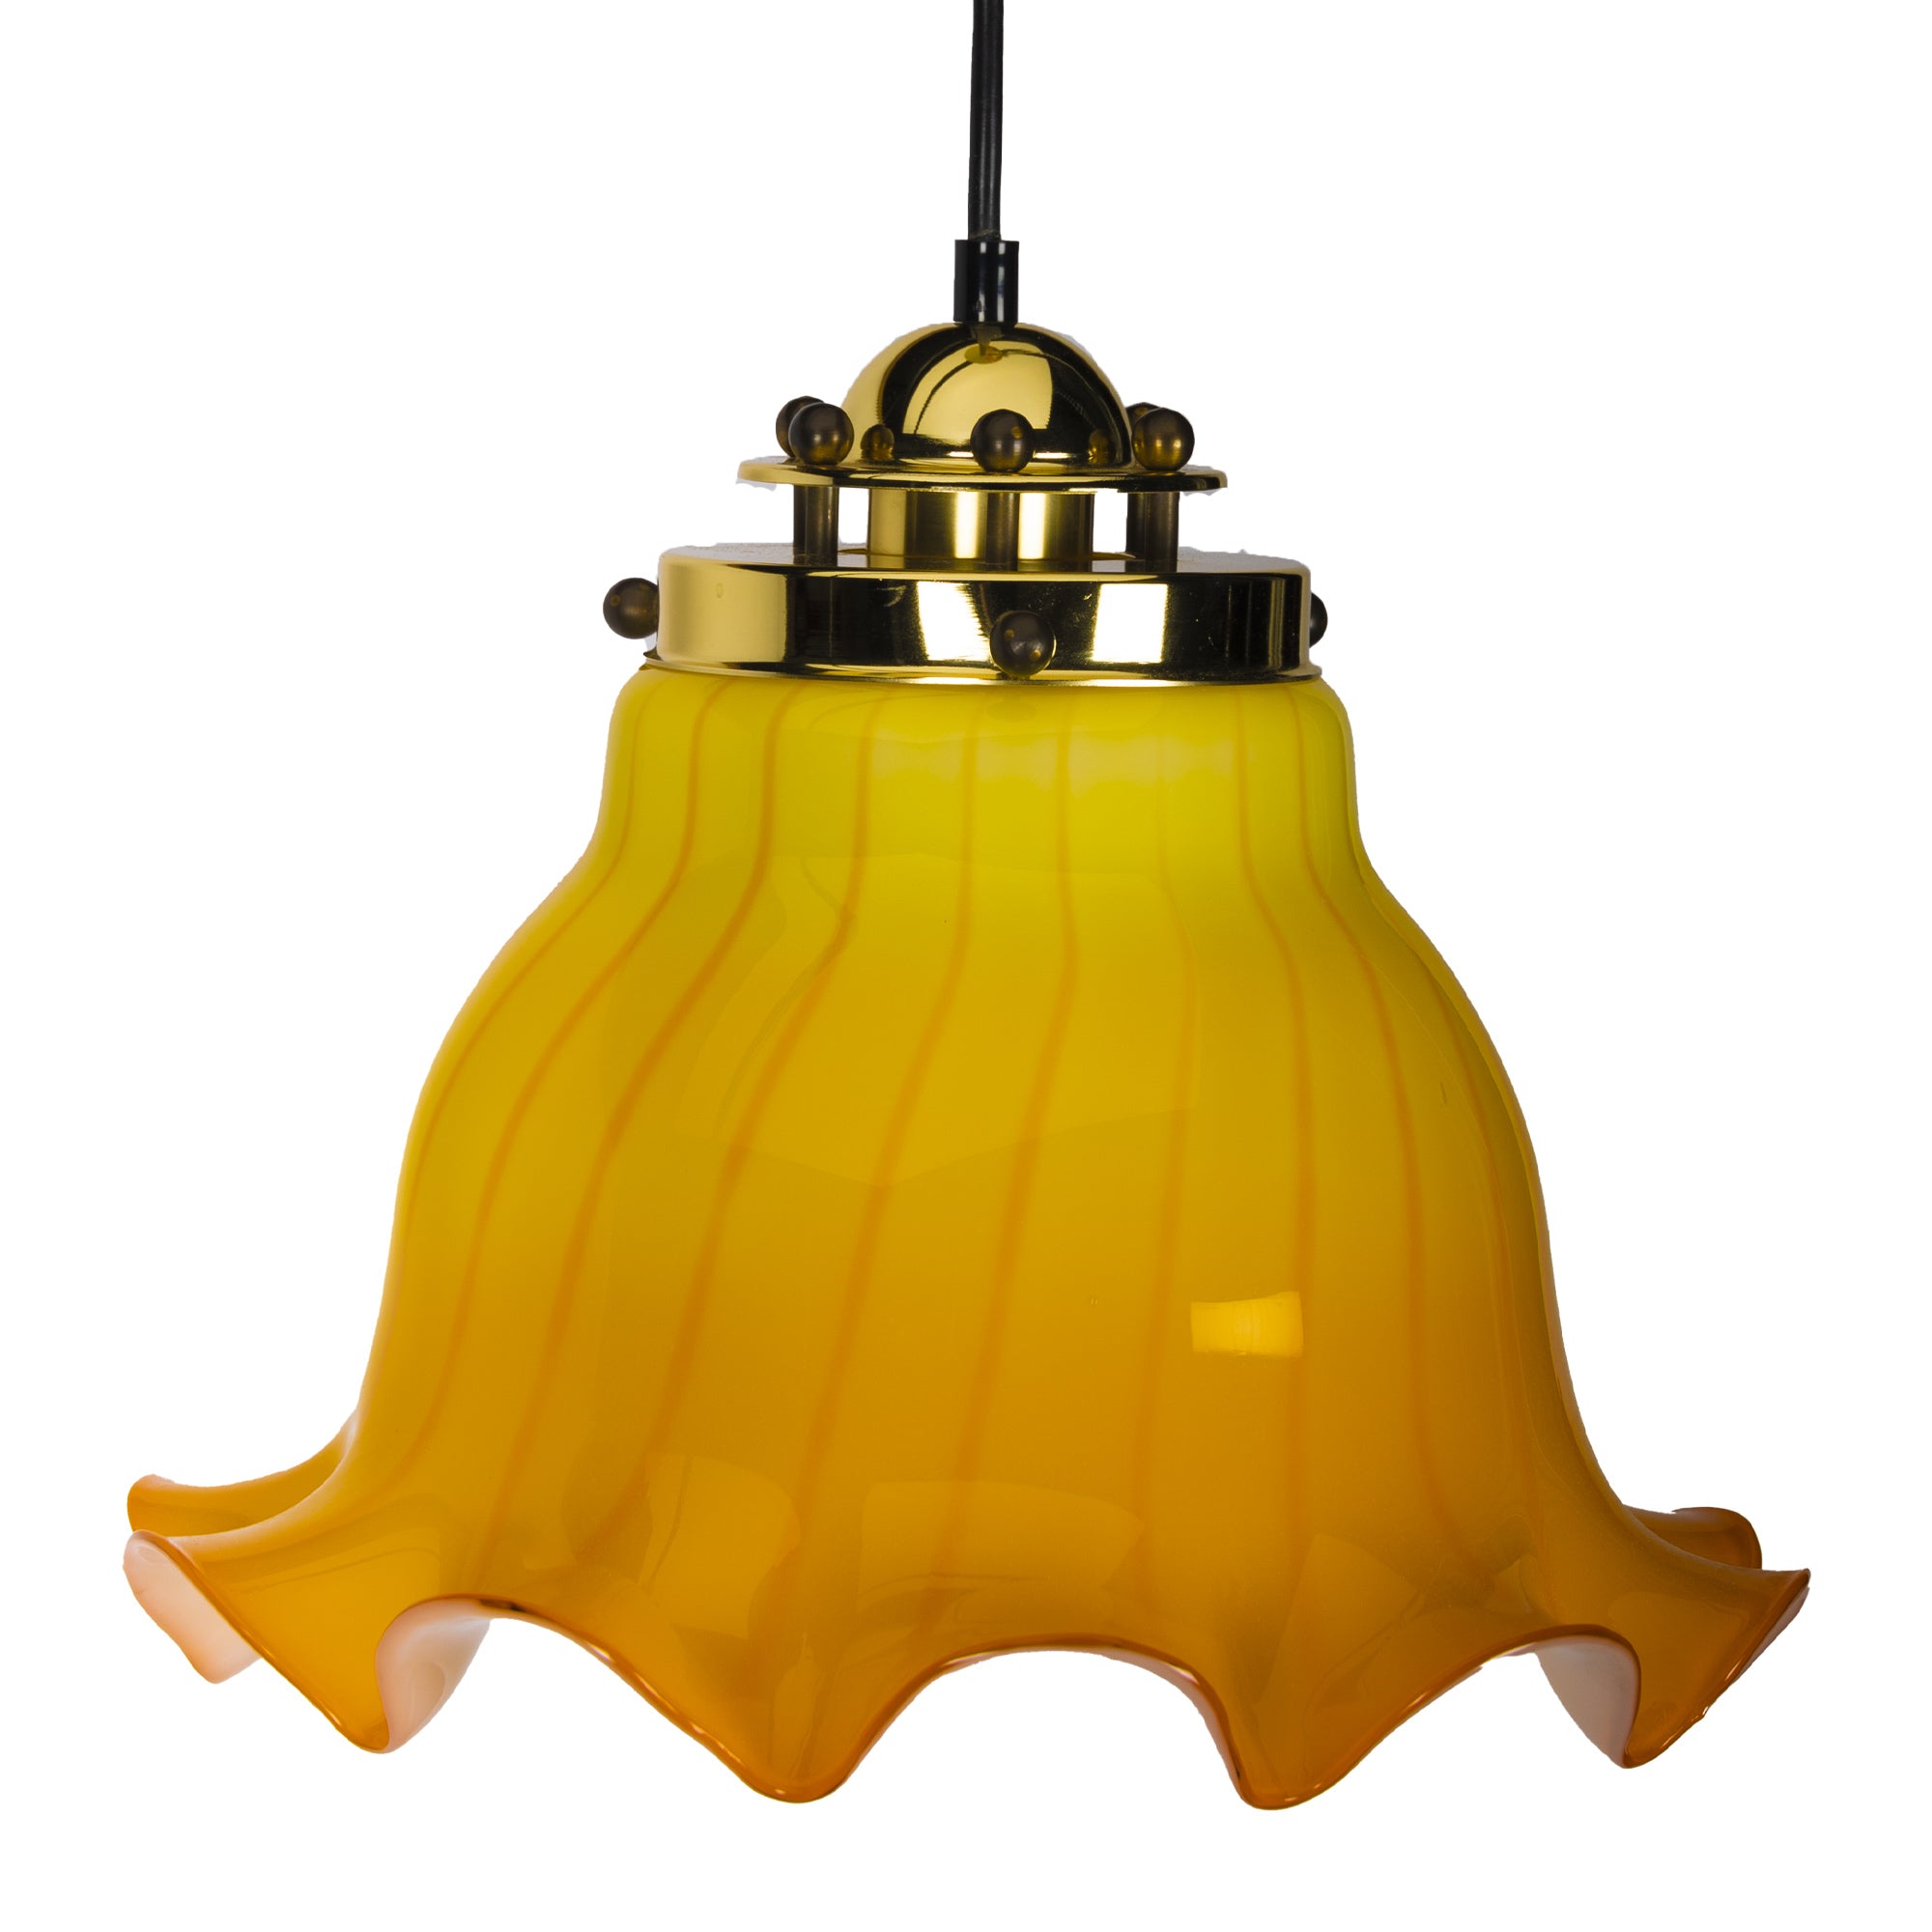 Two-Tone-Yellow Peil & Putzler Pendant Lamp